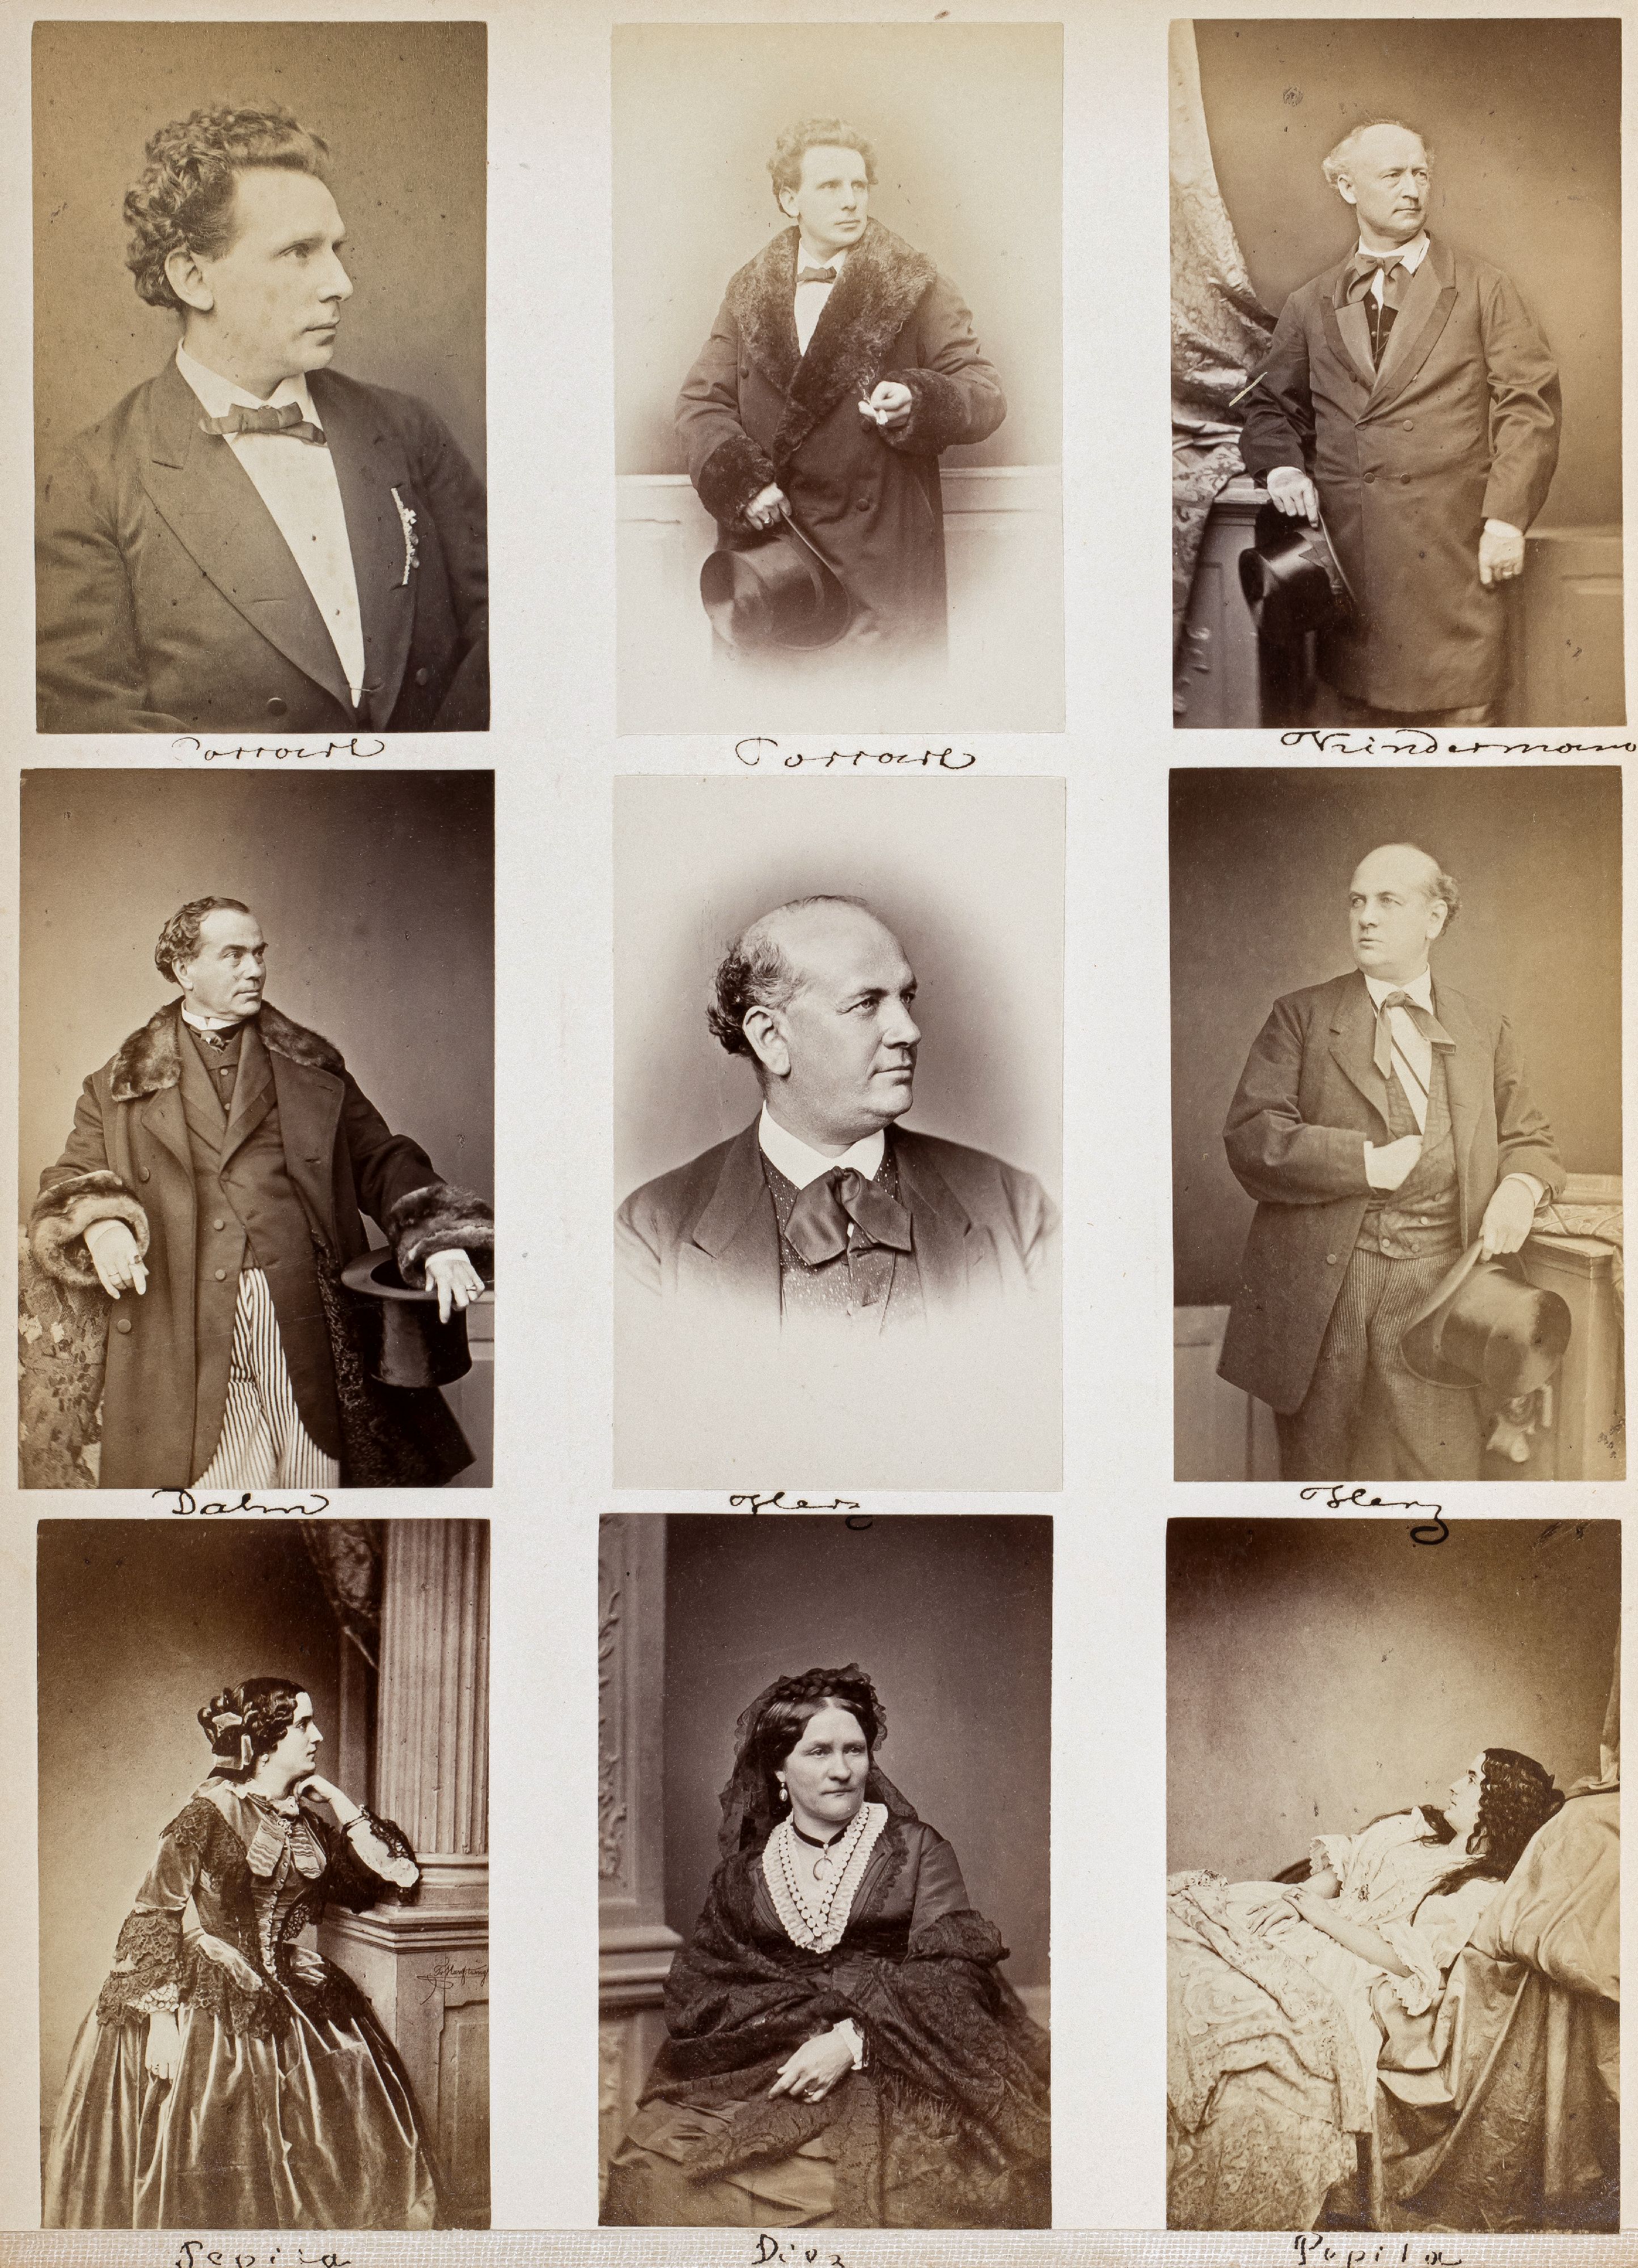 FOTOGRAFIE | Hanfstaengl, Franz | 1807 Baiernrain bei Tölz - 1877 München - Bild 22 aus 25